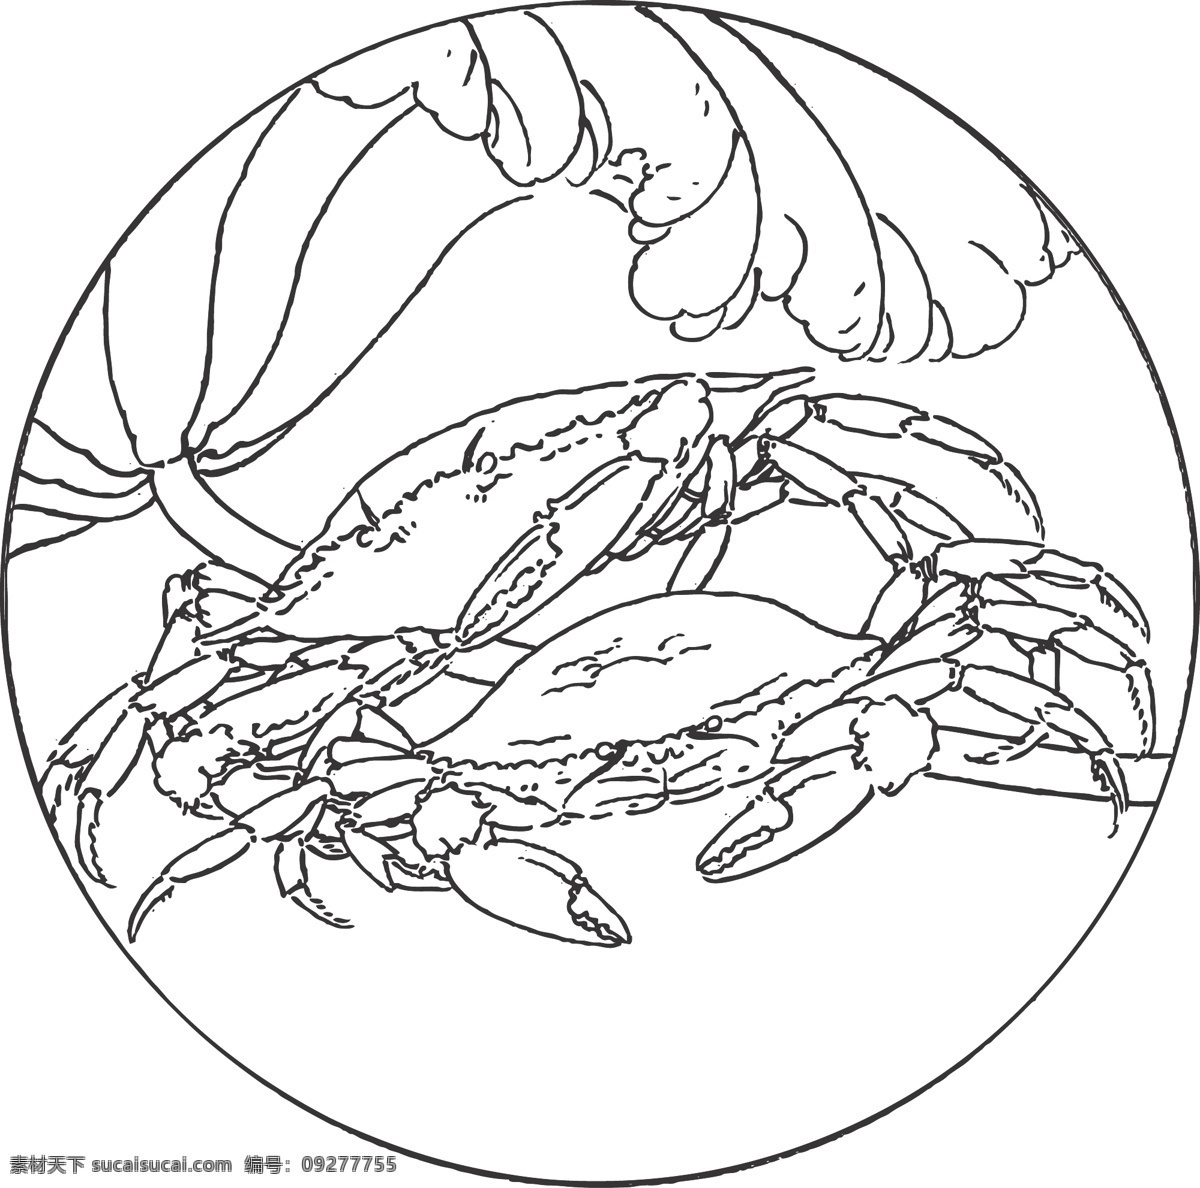 螃蟹 动物 甲壳类 地磁场 辨别方向 植物 叶子 线条 矢量 装饰 插画 白描 生物世界 海洋生物